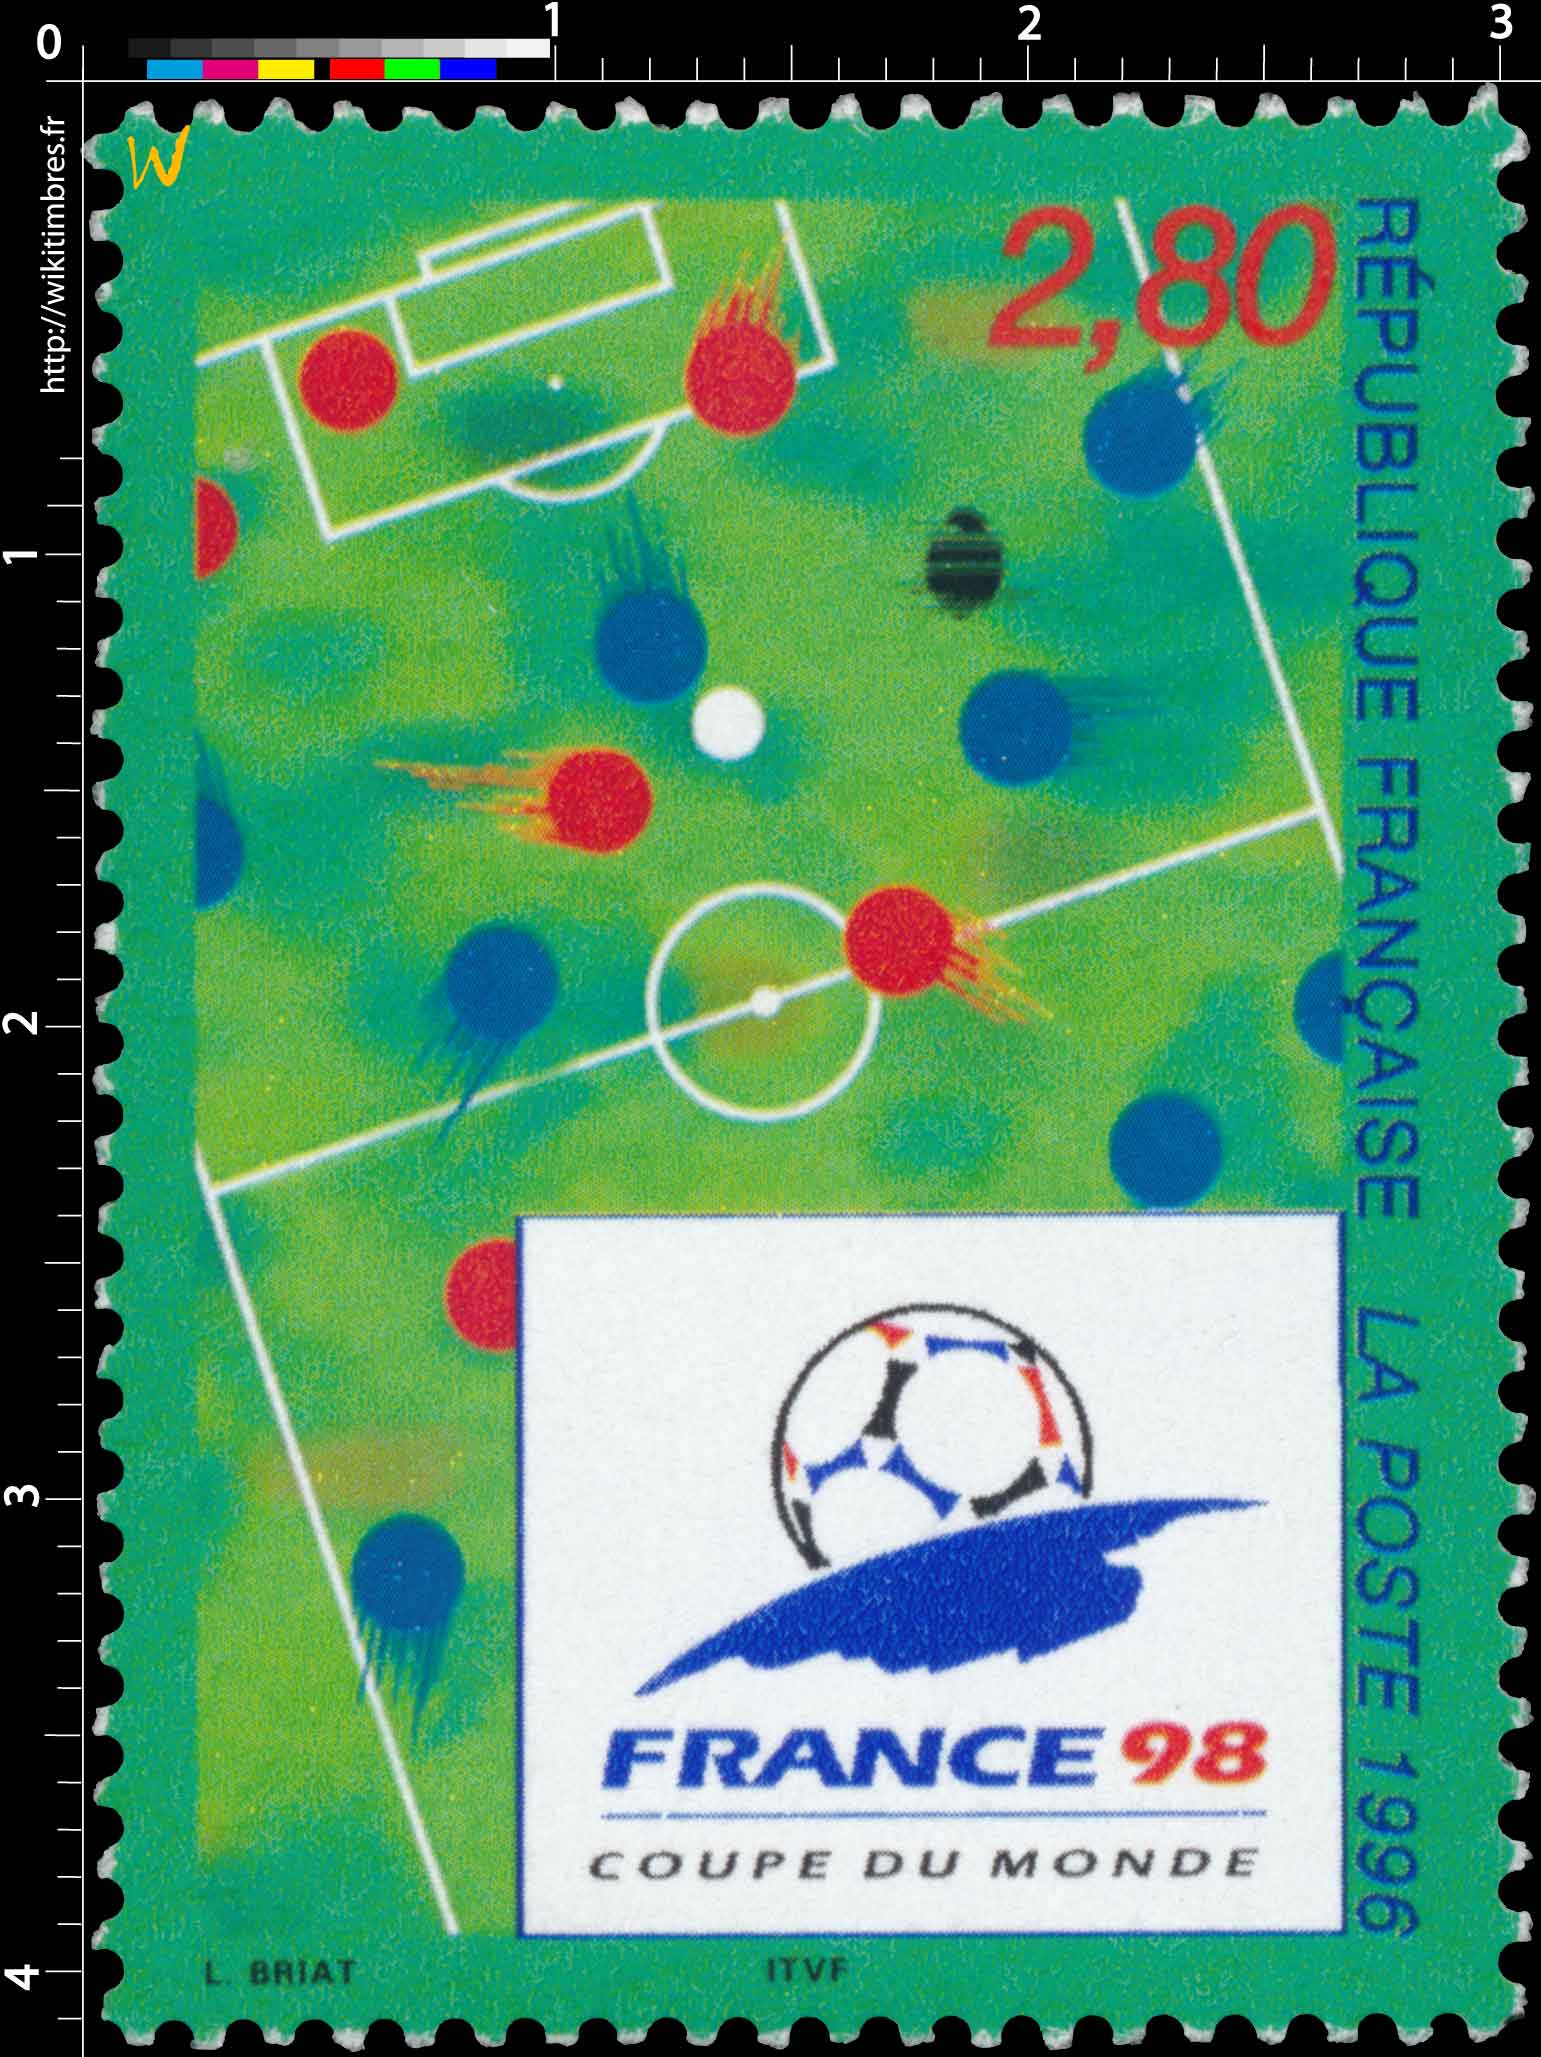 1996 FRANCE 98 COUPE DU MONDE